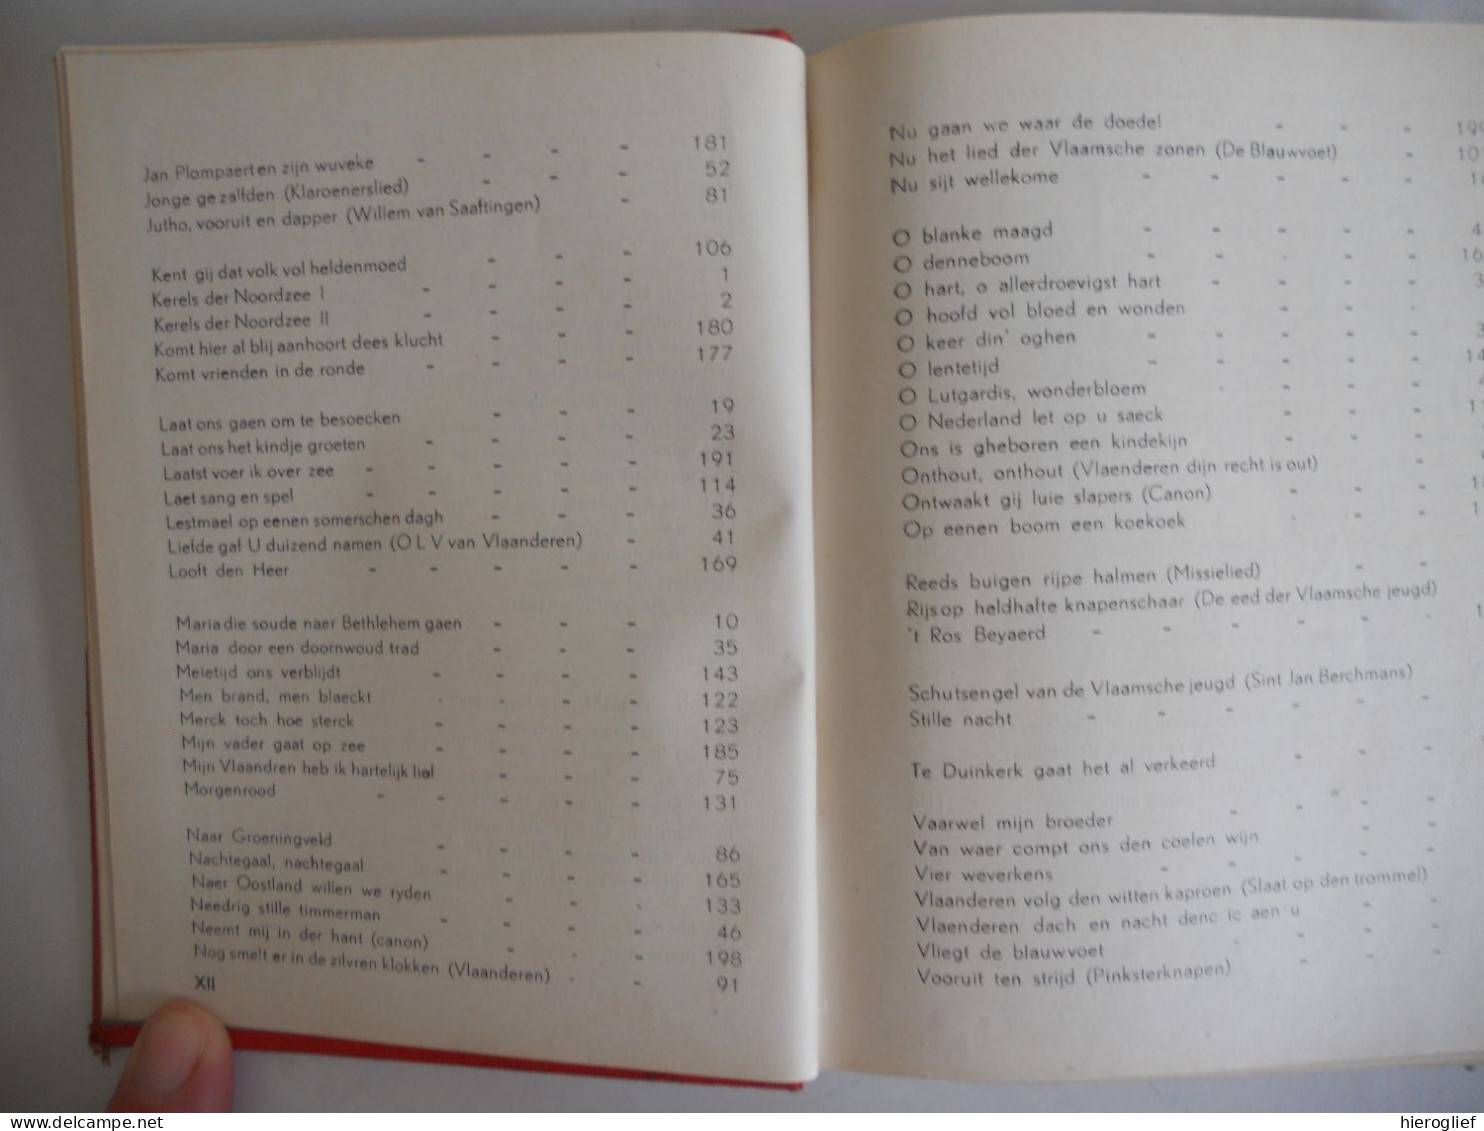 We zingen 'n nieuw lied 1936 uitgave caritas studenten antwerpen + K.S.A. Oostvlaanderen Gent / zang liederen muziek